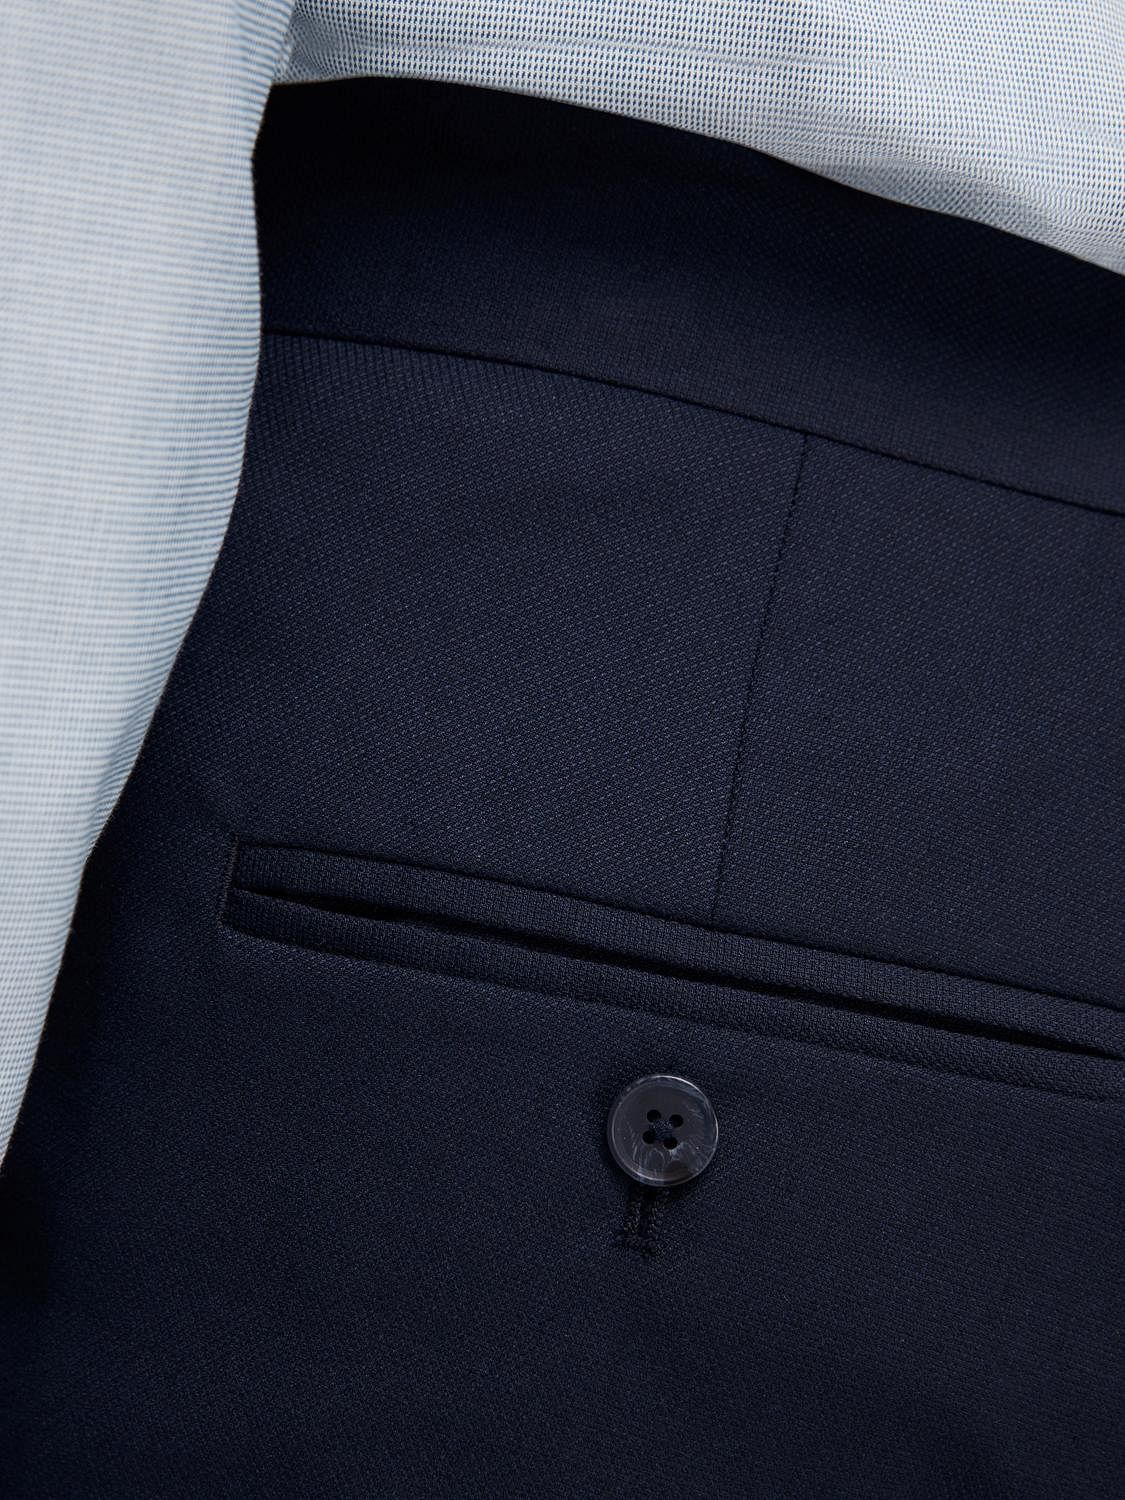 Sky blue suit pants | Tailor Store®